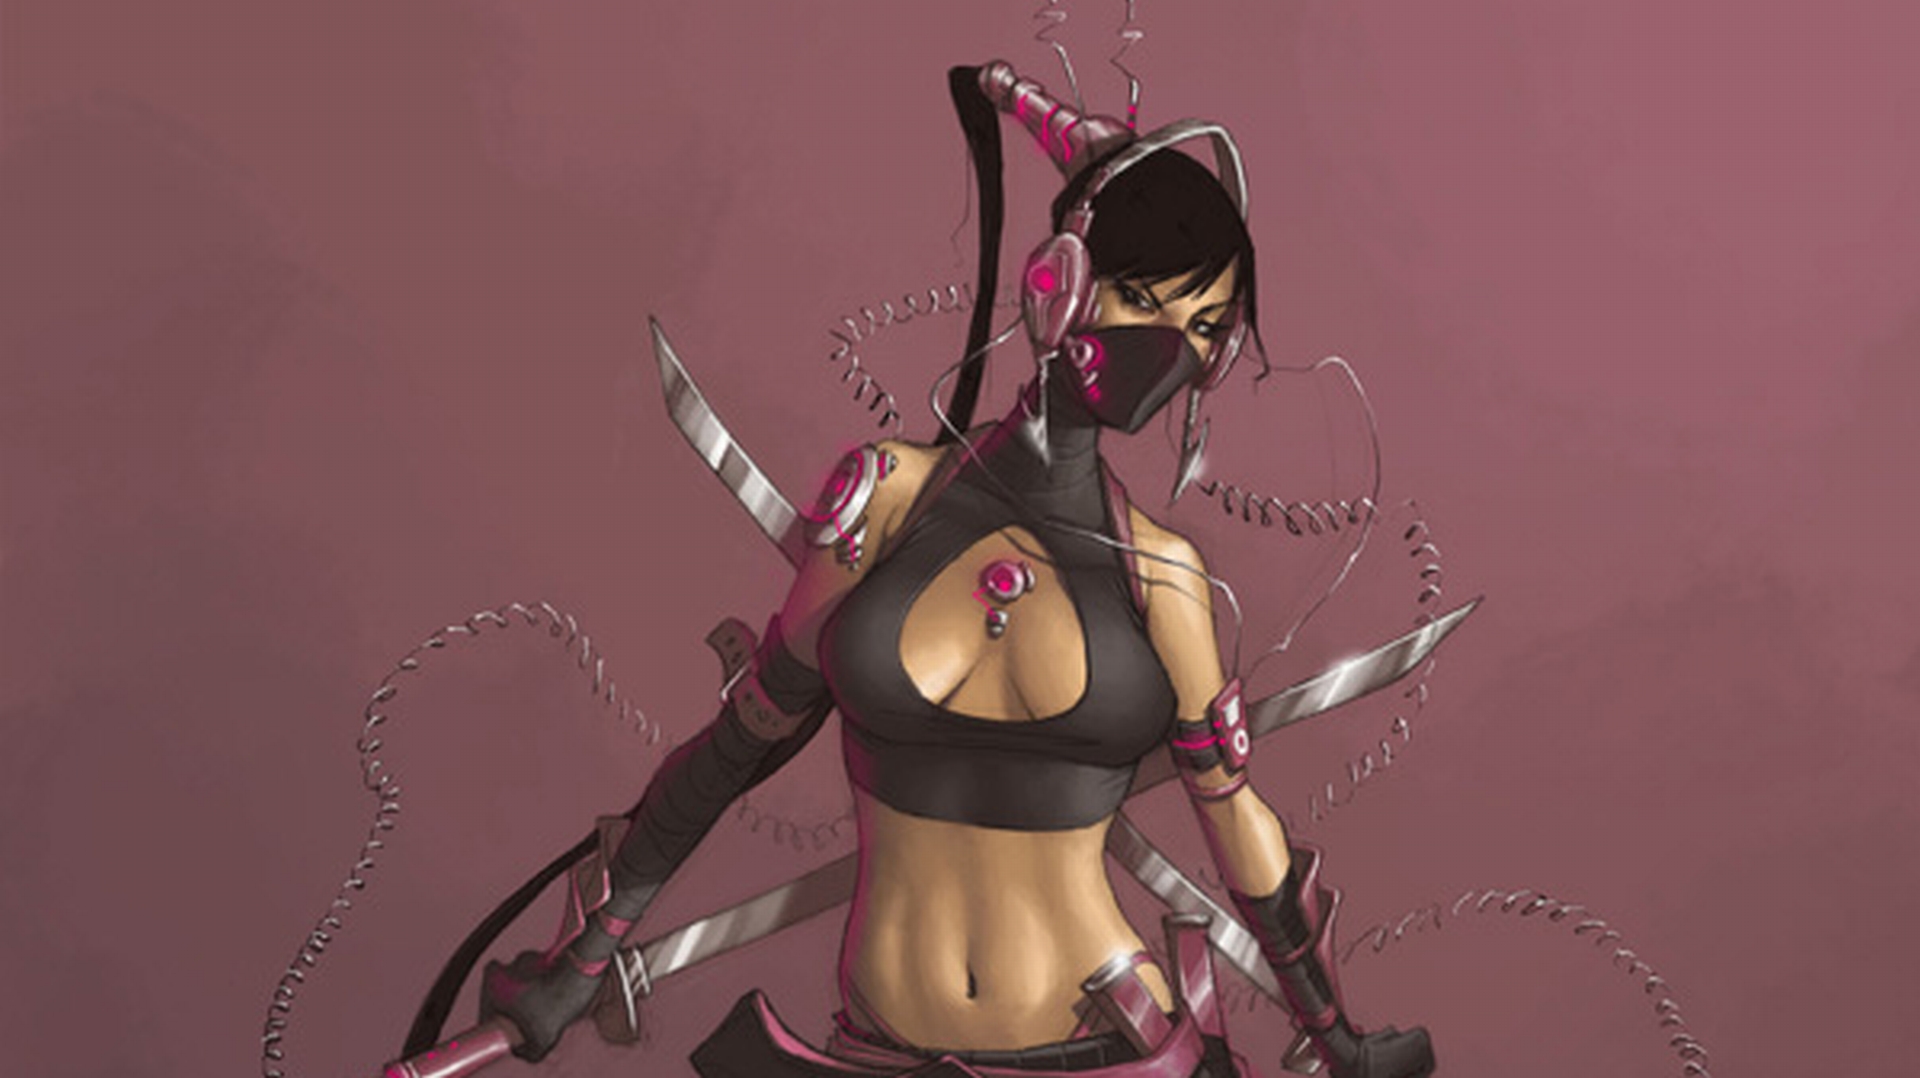 Fantasy women warrior with a striking background